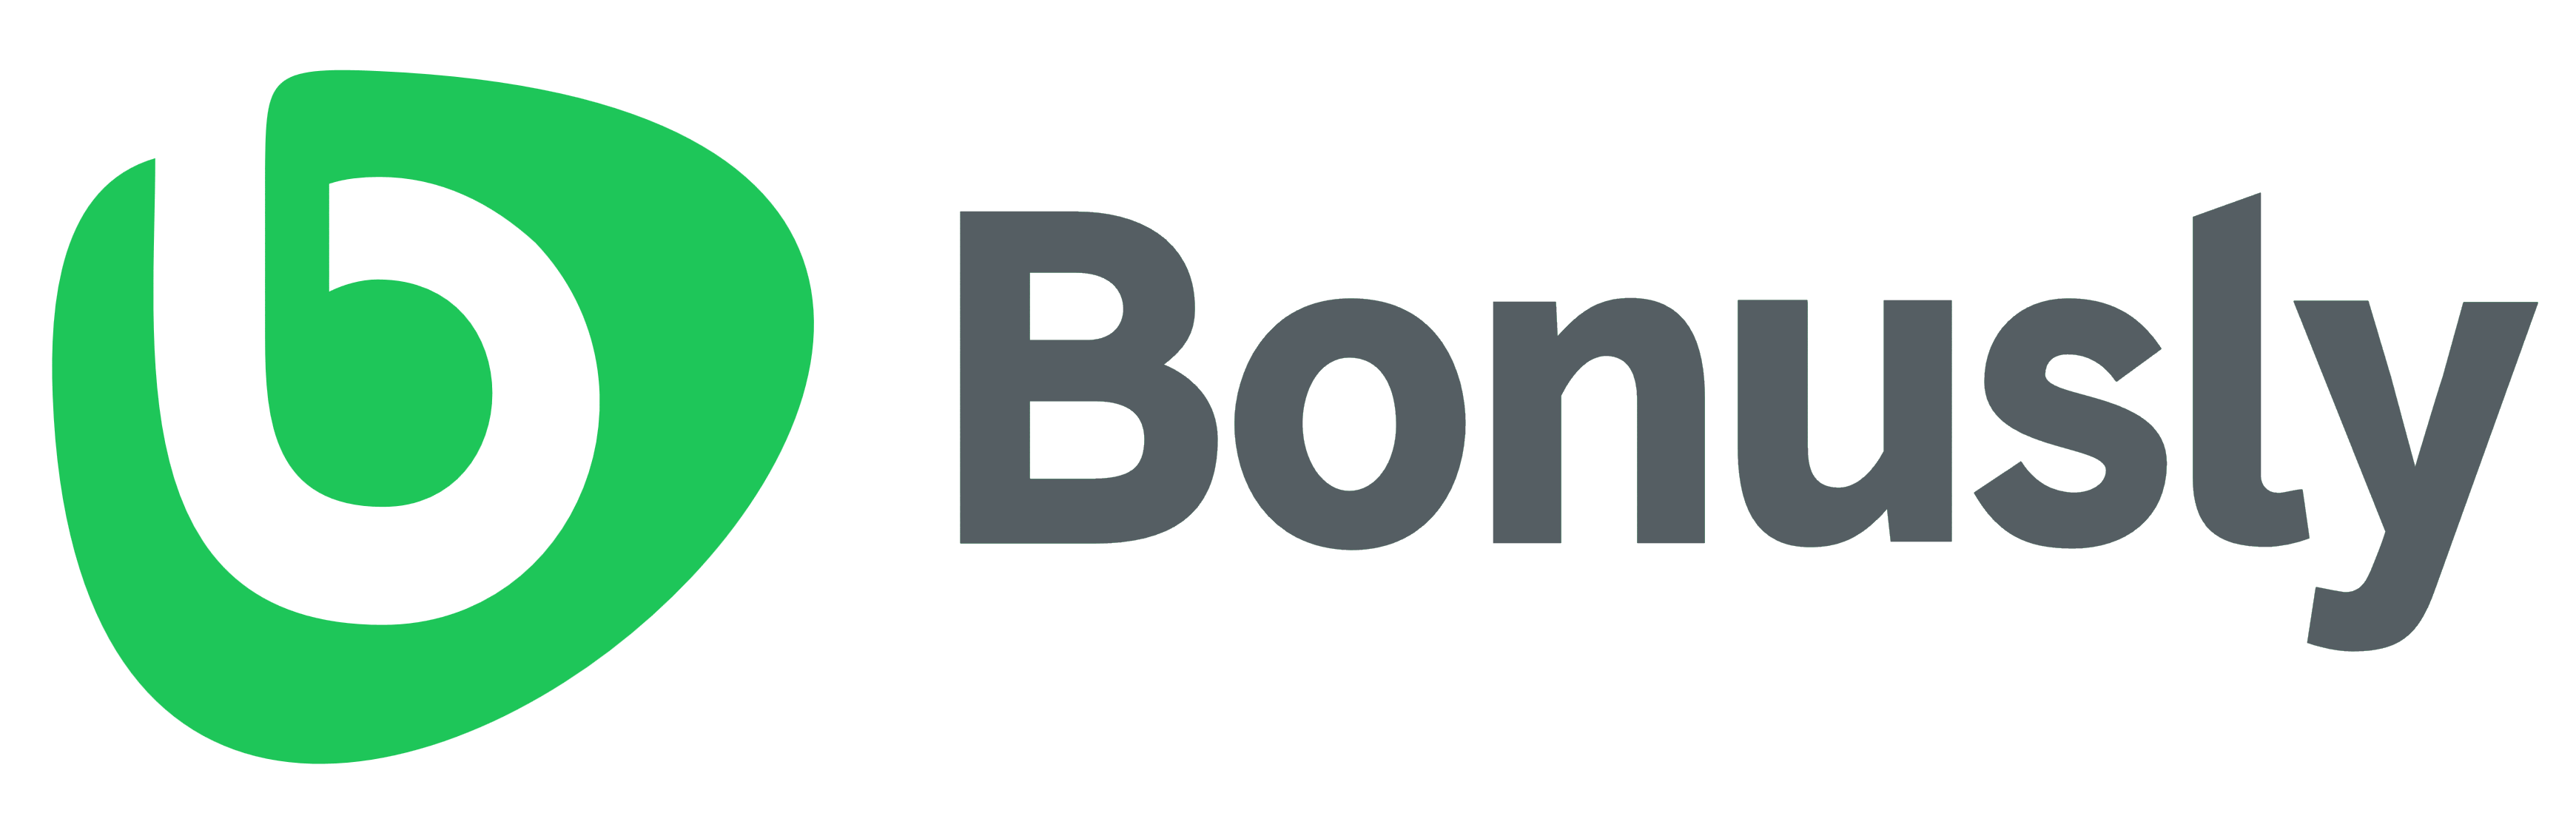 Bonusly logo, logotype